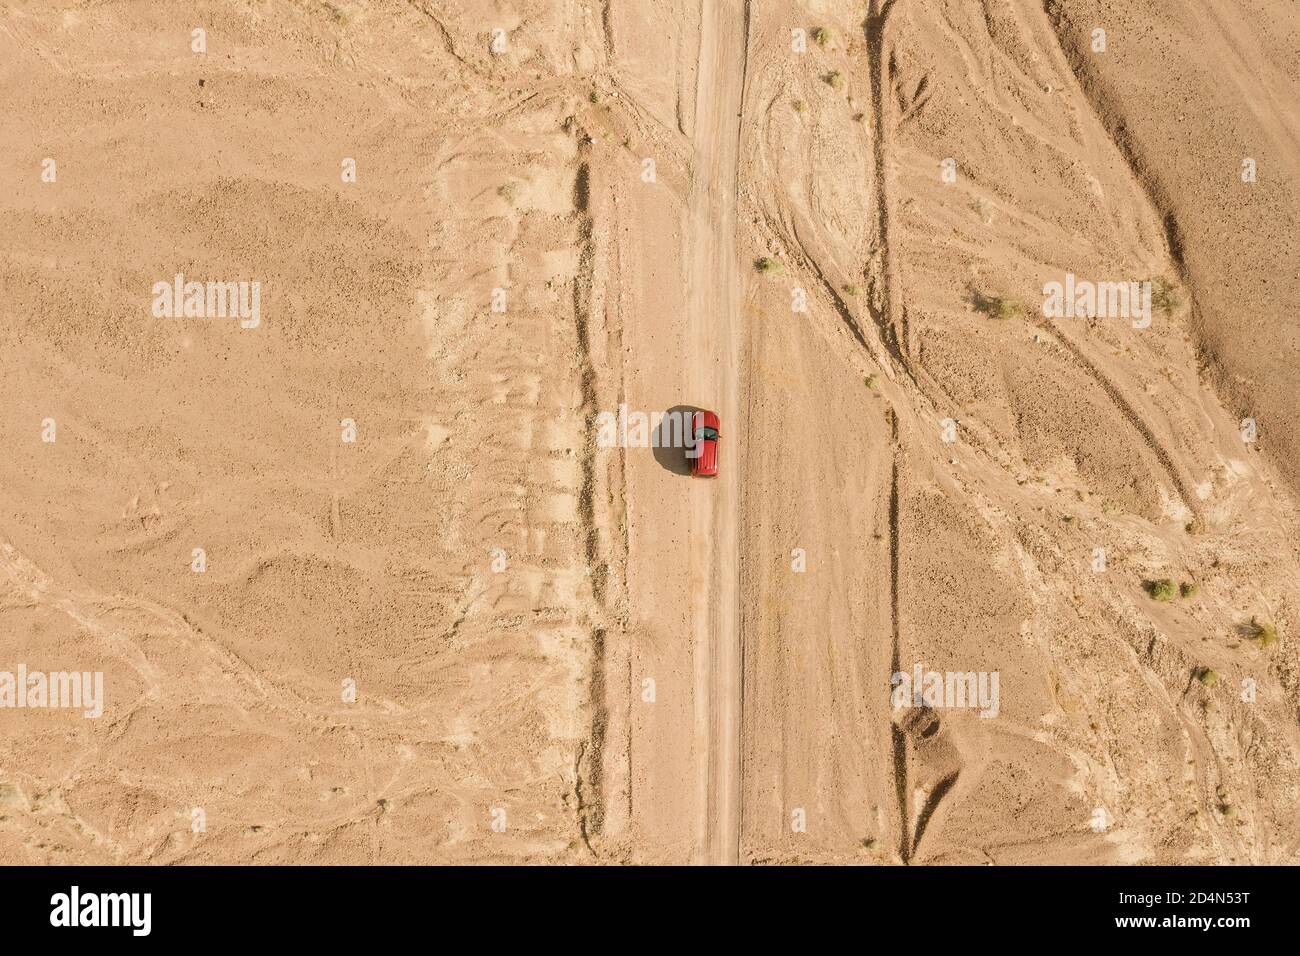 SUV rosso su un percorso desertico, immagine aerea ad alta quota. Foto Stock